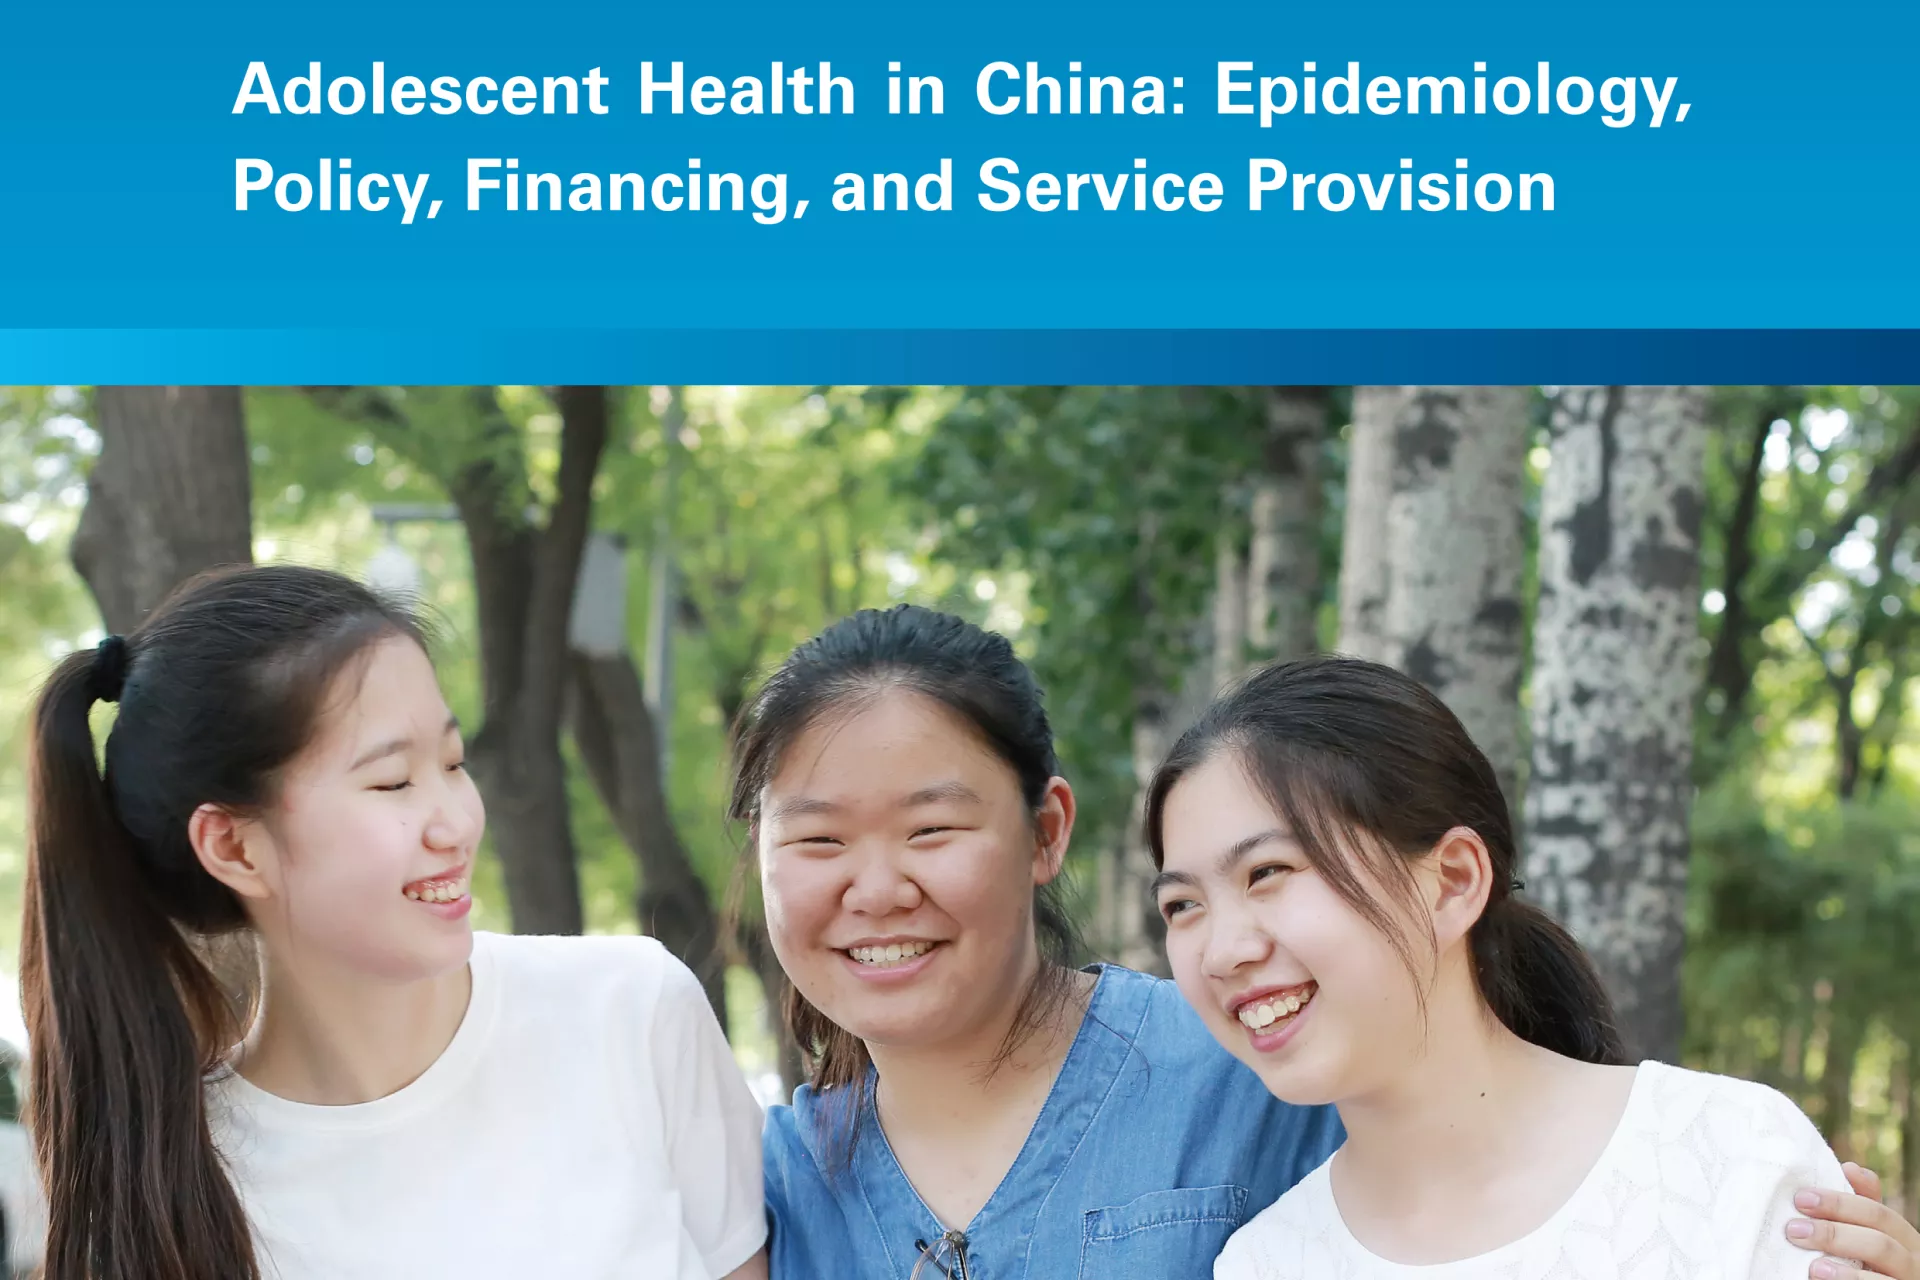 中国青少年健康： 疾病流行、政策、筹资和服务提供